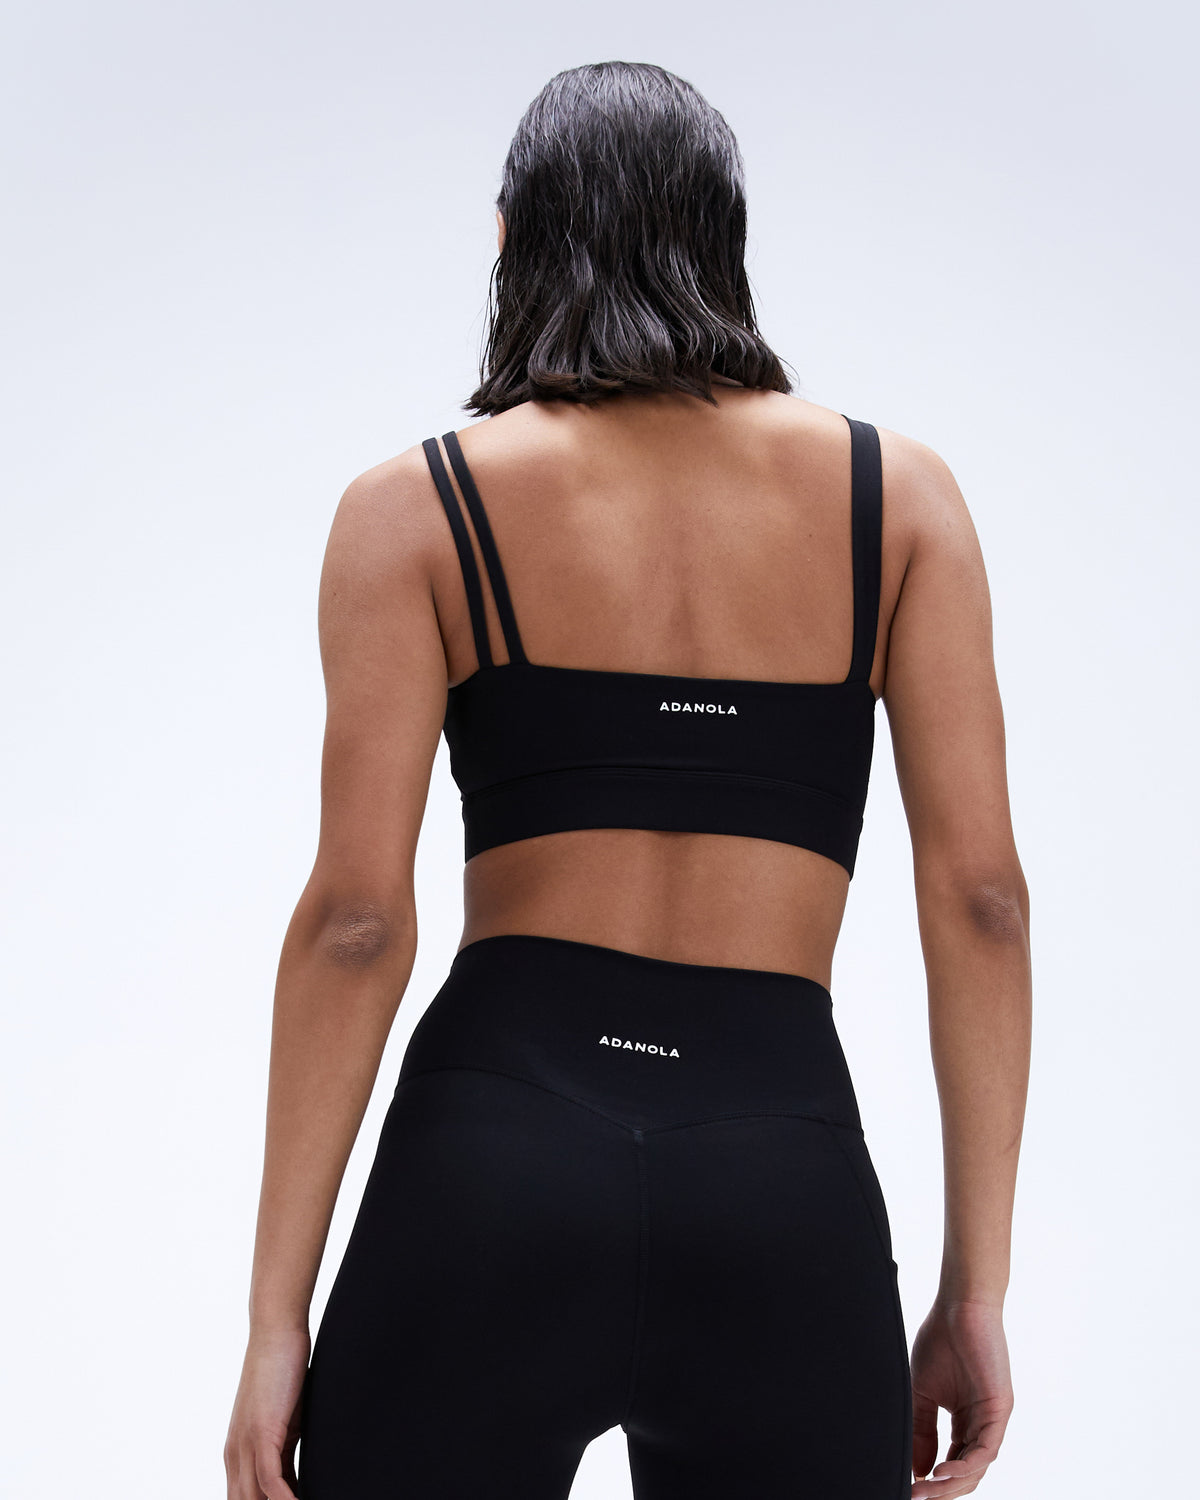 Aurola Sports Bra Black Size M - $25 (28% Off Retail) New With